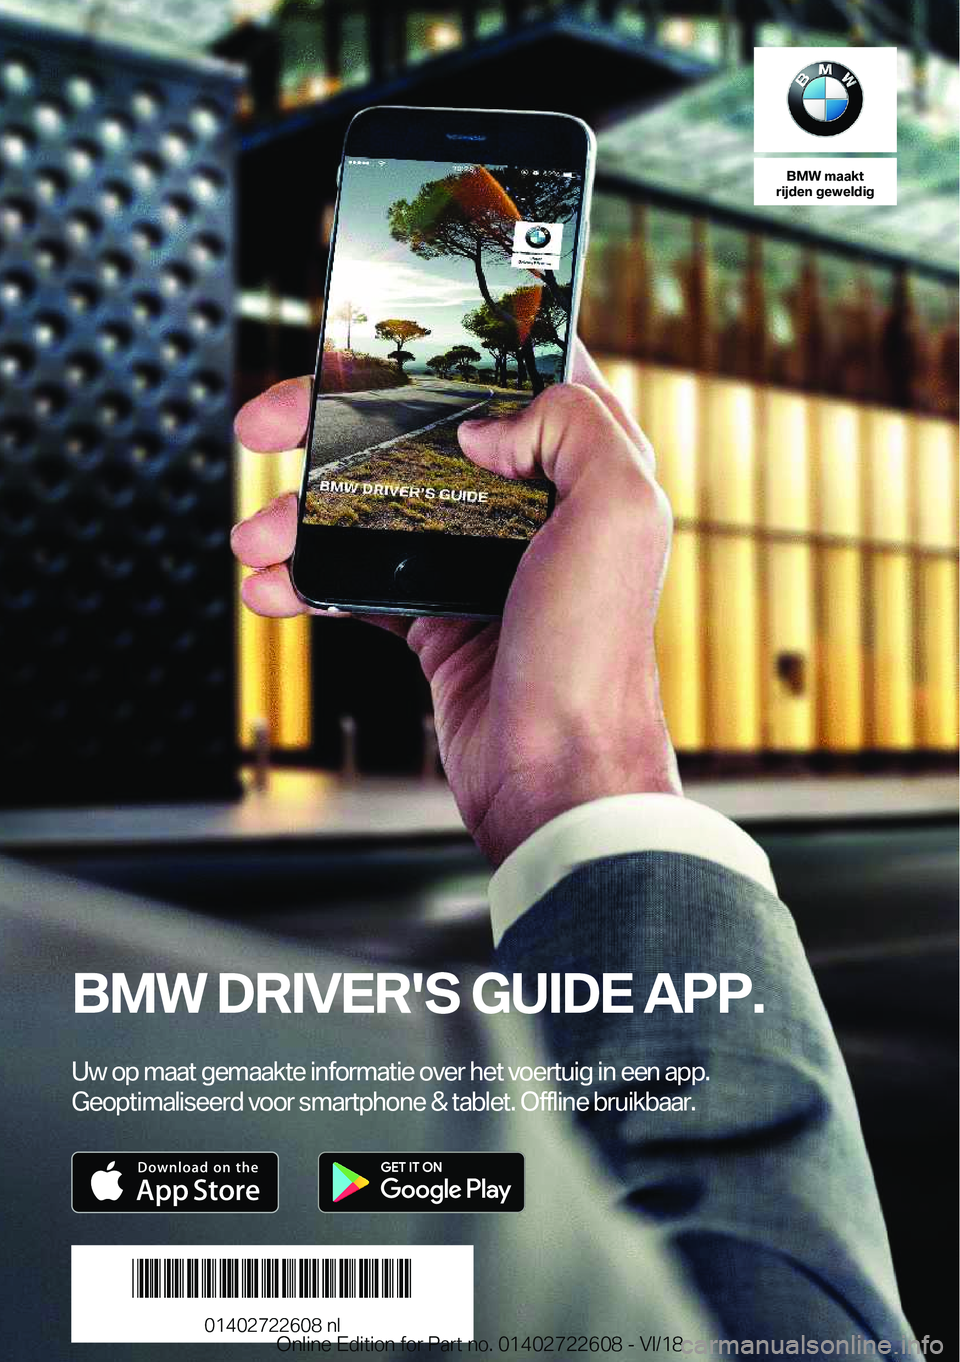 BMW 5 SERIES 2019  Instructieboekjes (in Dutch) �B�M�W��m�a�a�k�t
�r�i�j�d�e�n��g�e�w�e�l�d�i�g
�B�M�W��D�R�I�V�E�R�'�S��G�U�I�D�E��A�P�P�.
�U�w��o�p��m�a�a�t��g�e�m�a�a�k�t�e��i�n�f�o�r�m�a�t�i�e��o�v�e�r��h�e�t��v�o�e�r�t�u�i�g��